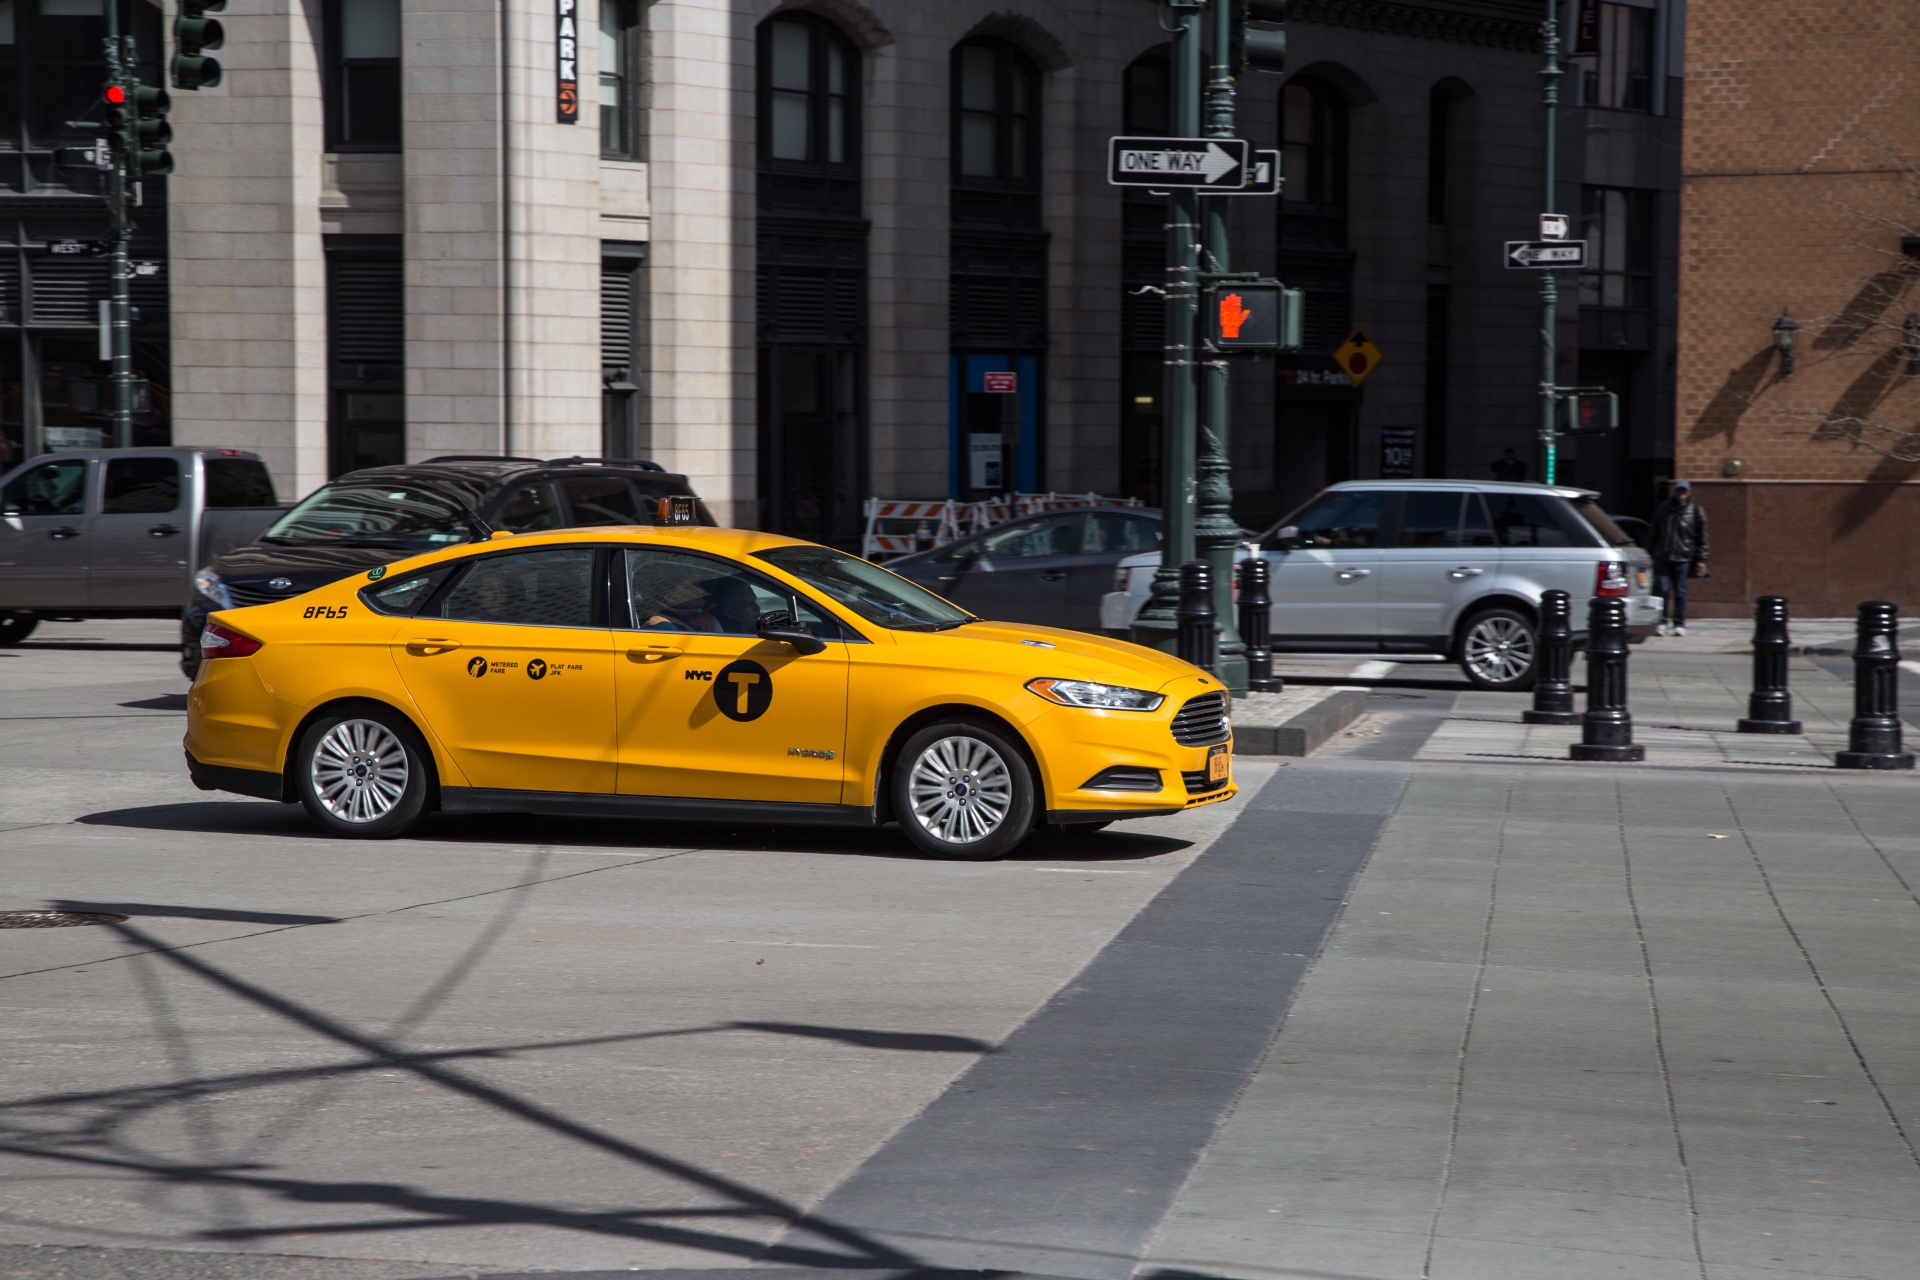 Купить желтое такси. Еллоу КЭБ такси. Желтый автомобиль. Желтая машина такси. Желтое такси Нью Йорк.